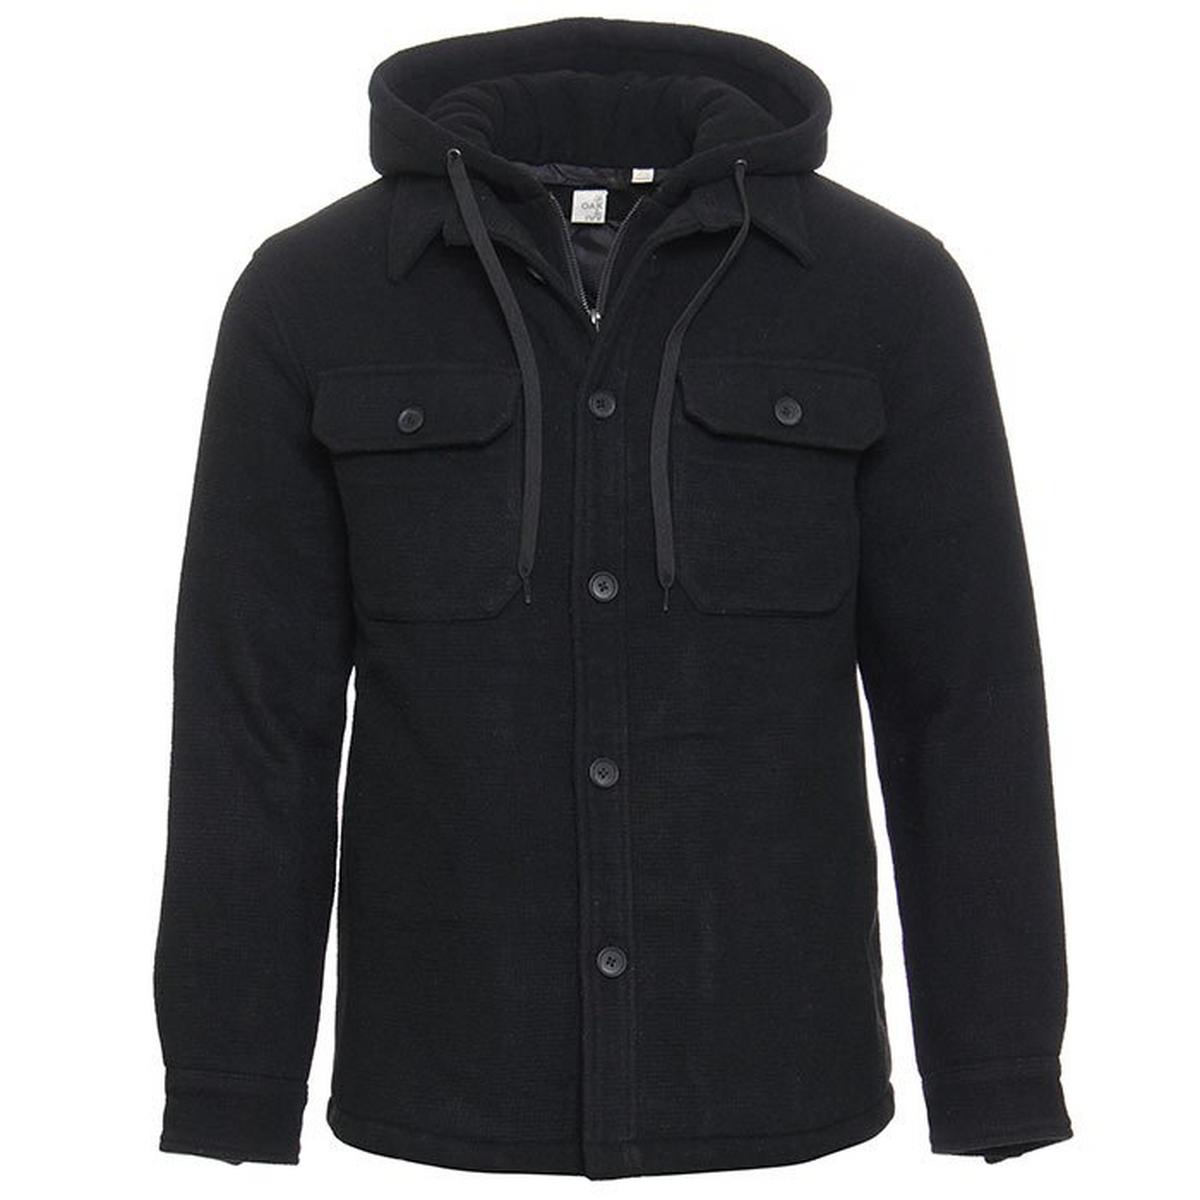 Men's Hooded Full-Zip Shirt Jacket